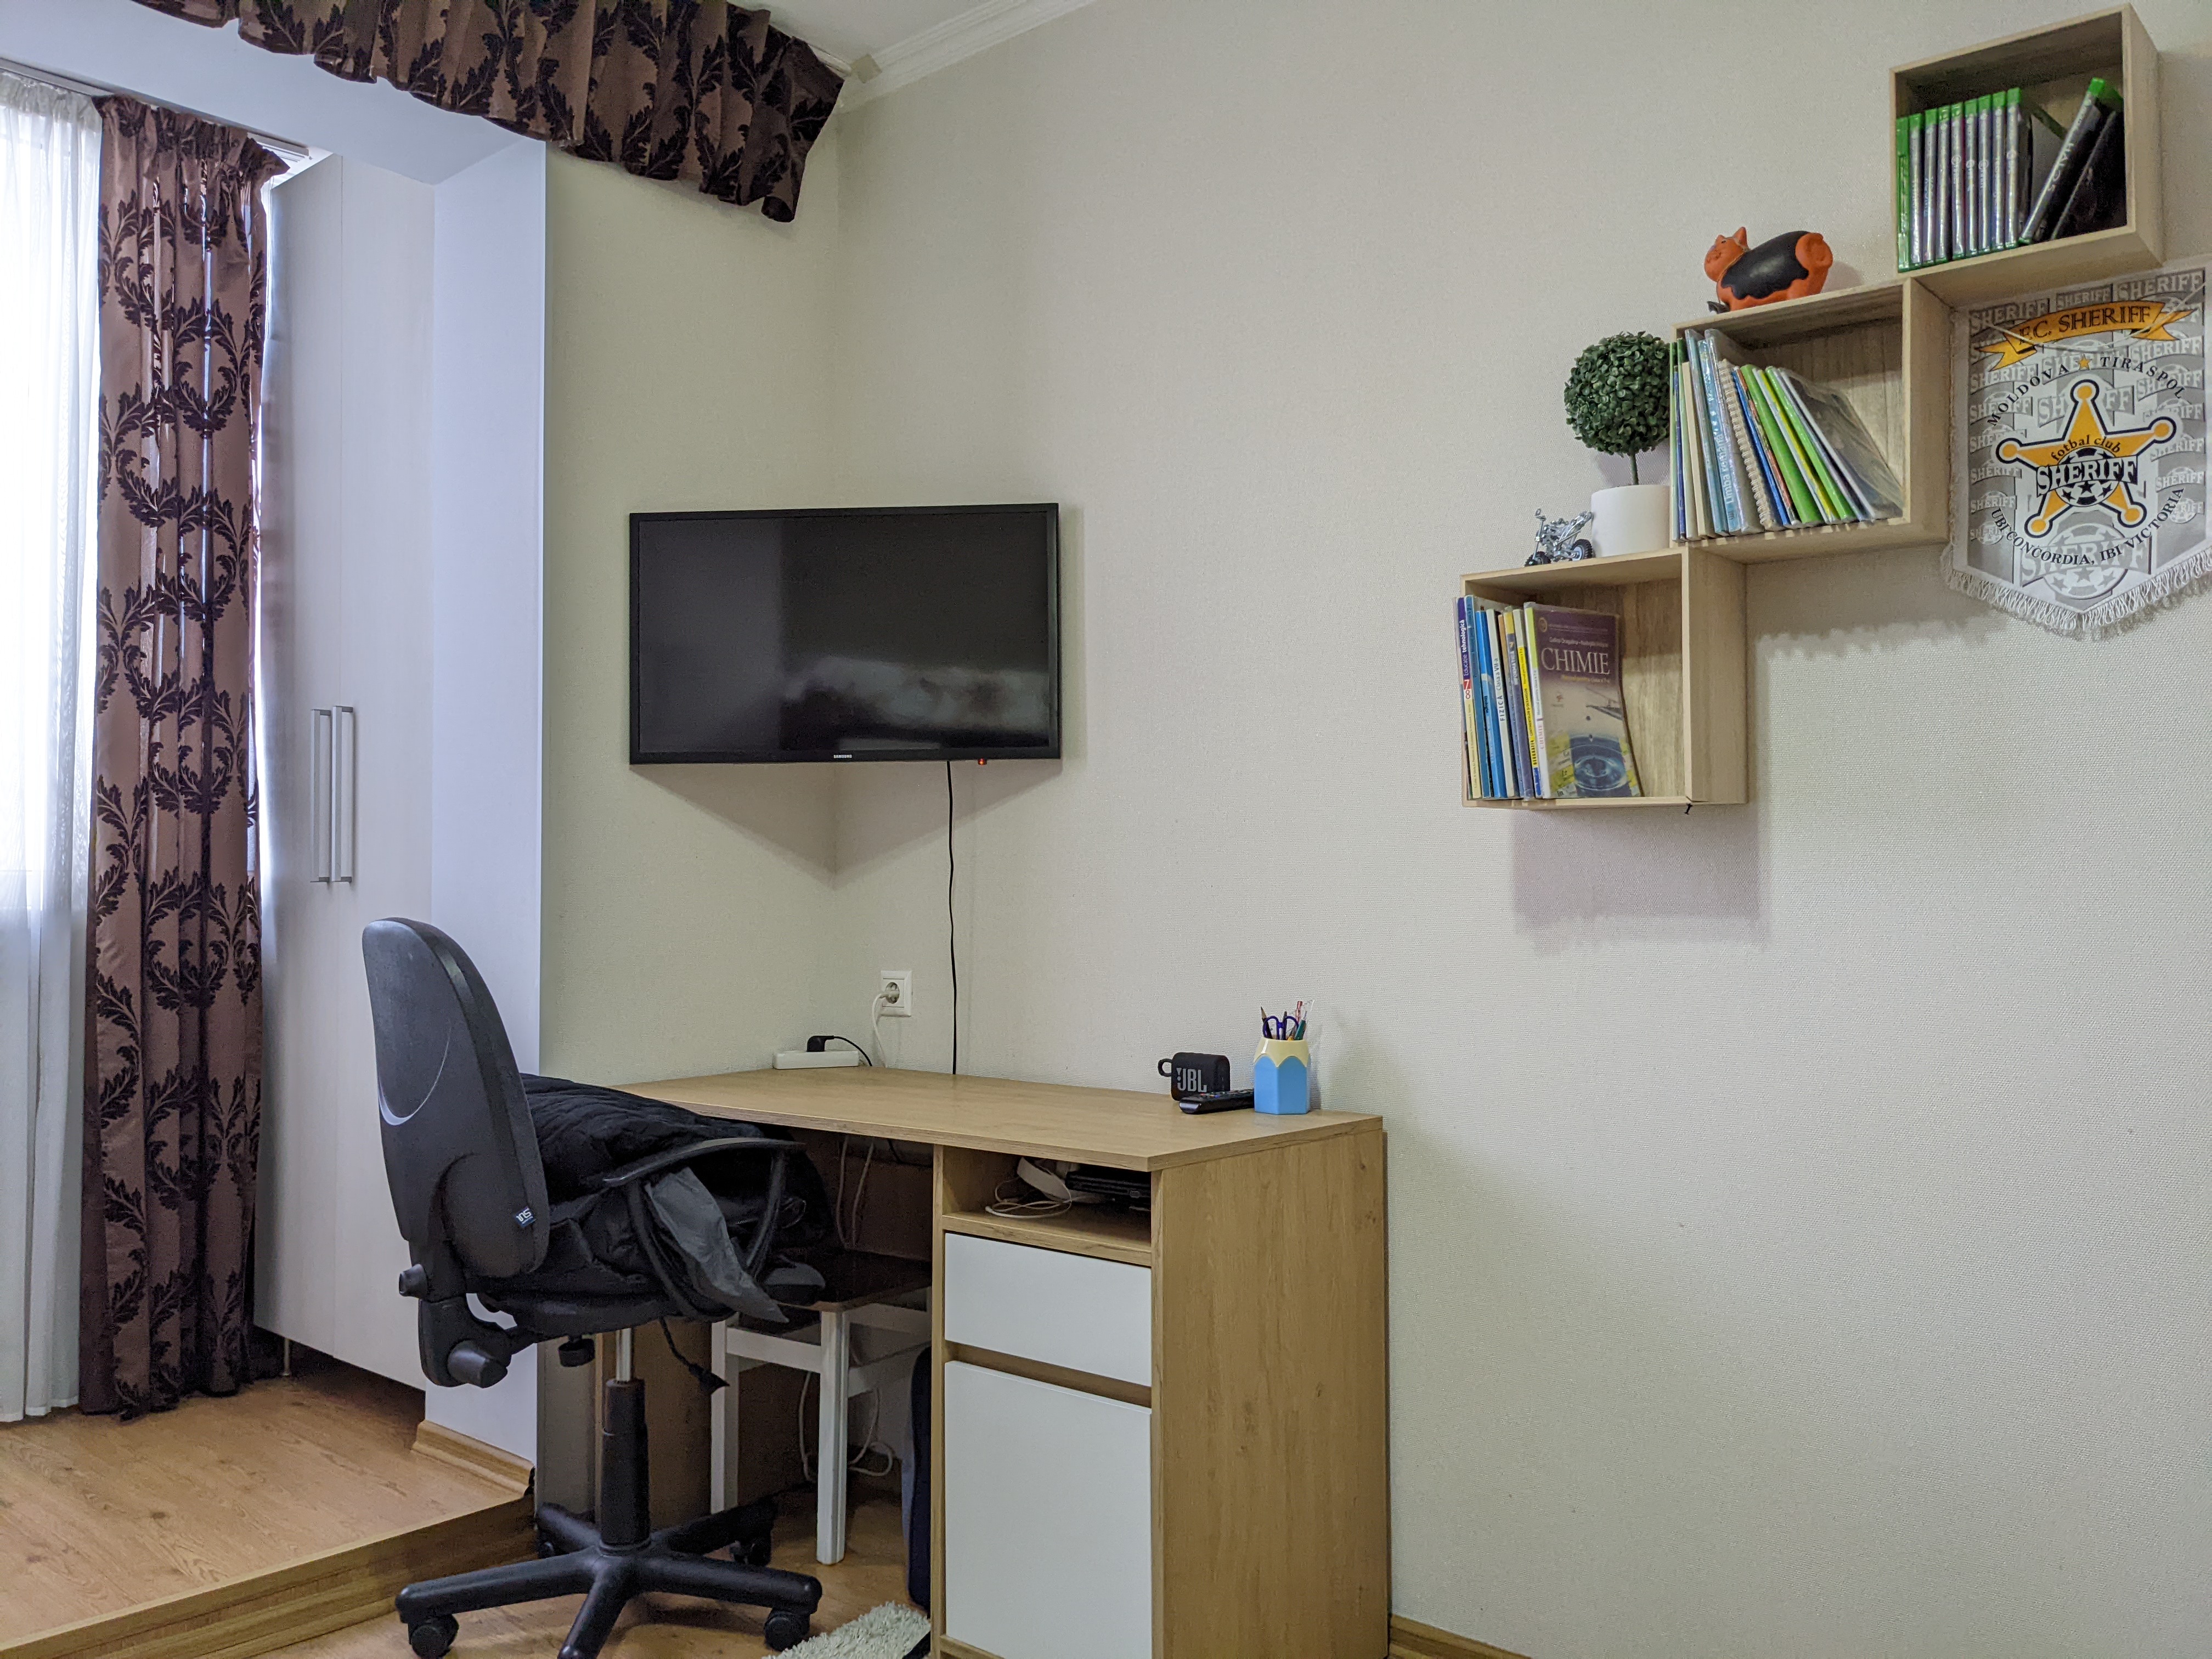 VÂNDUT Apartament de vânzare, Chișinău, sec. Telecentru, seria 143, 3 odăi cu debara, 80 m2, et.5